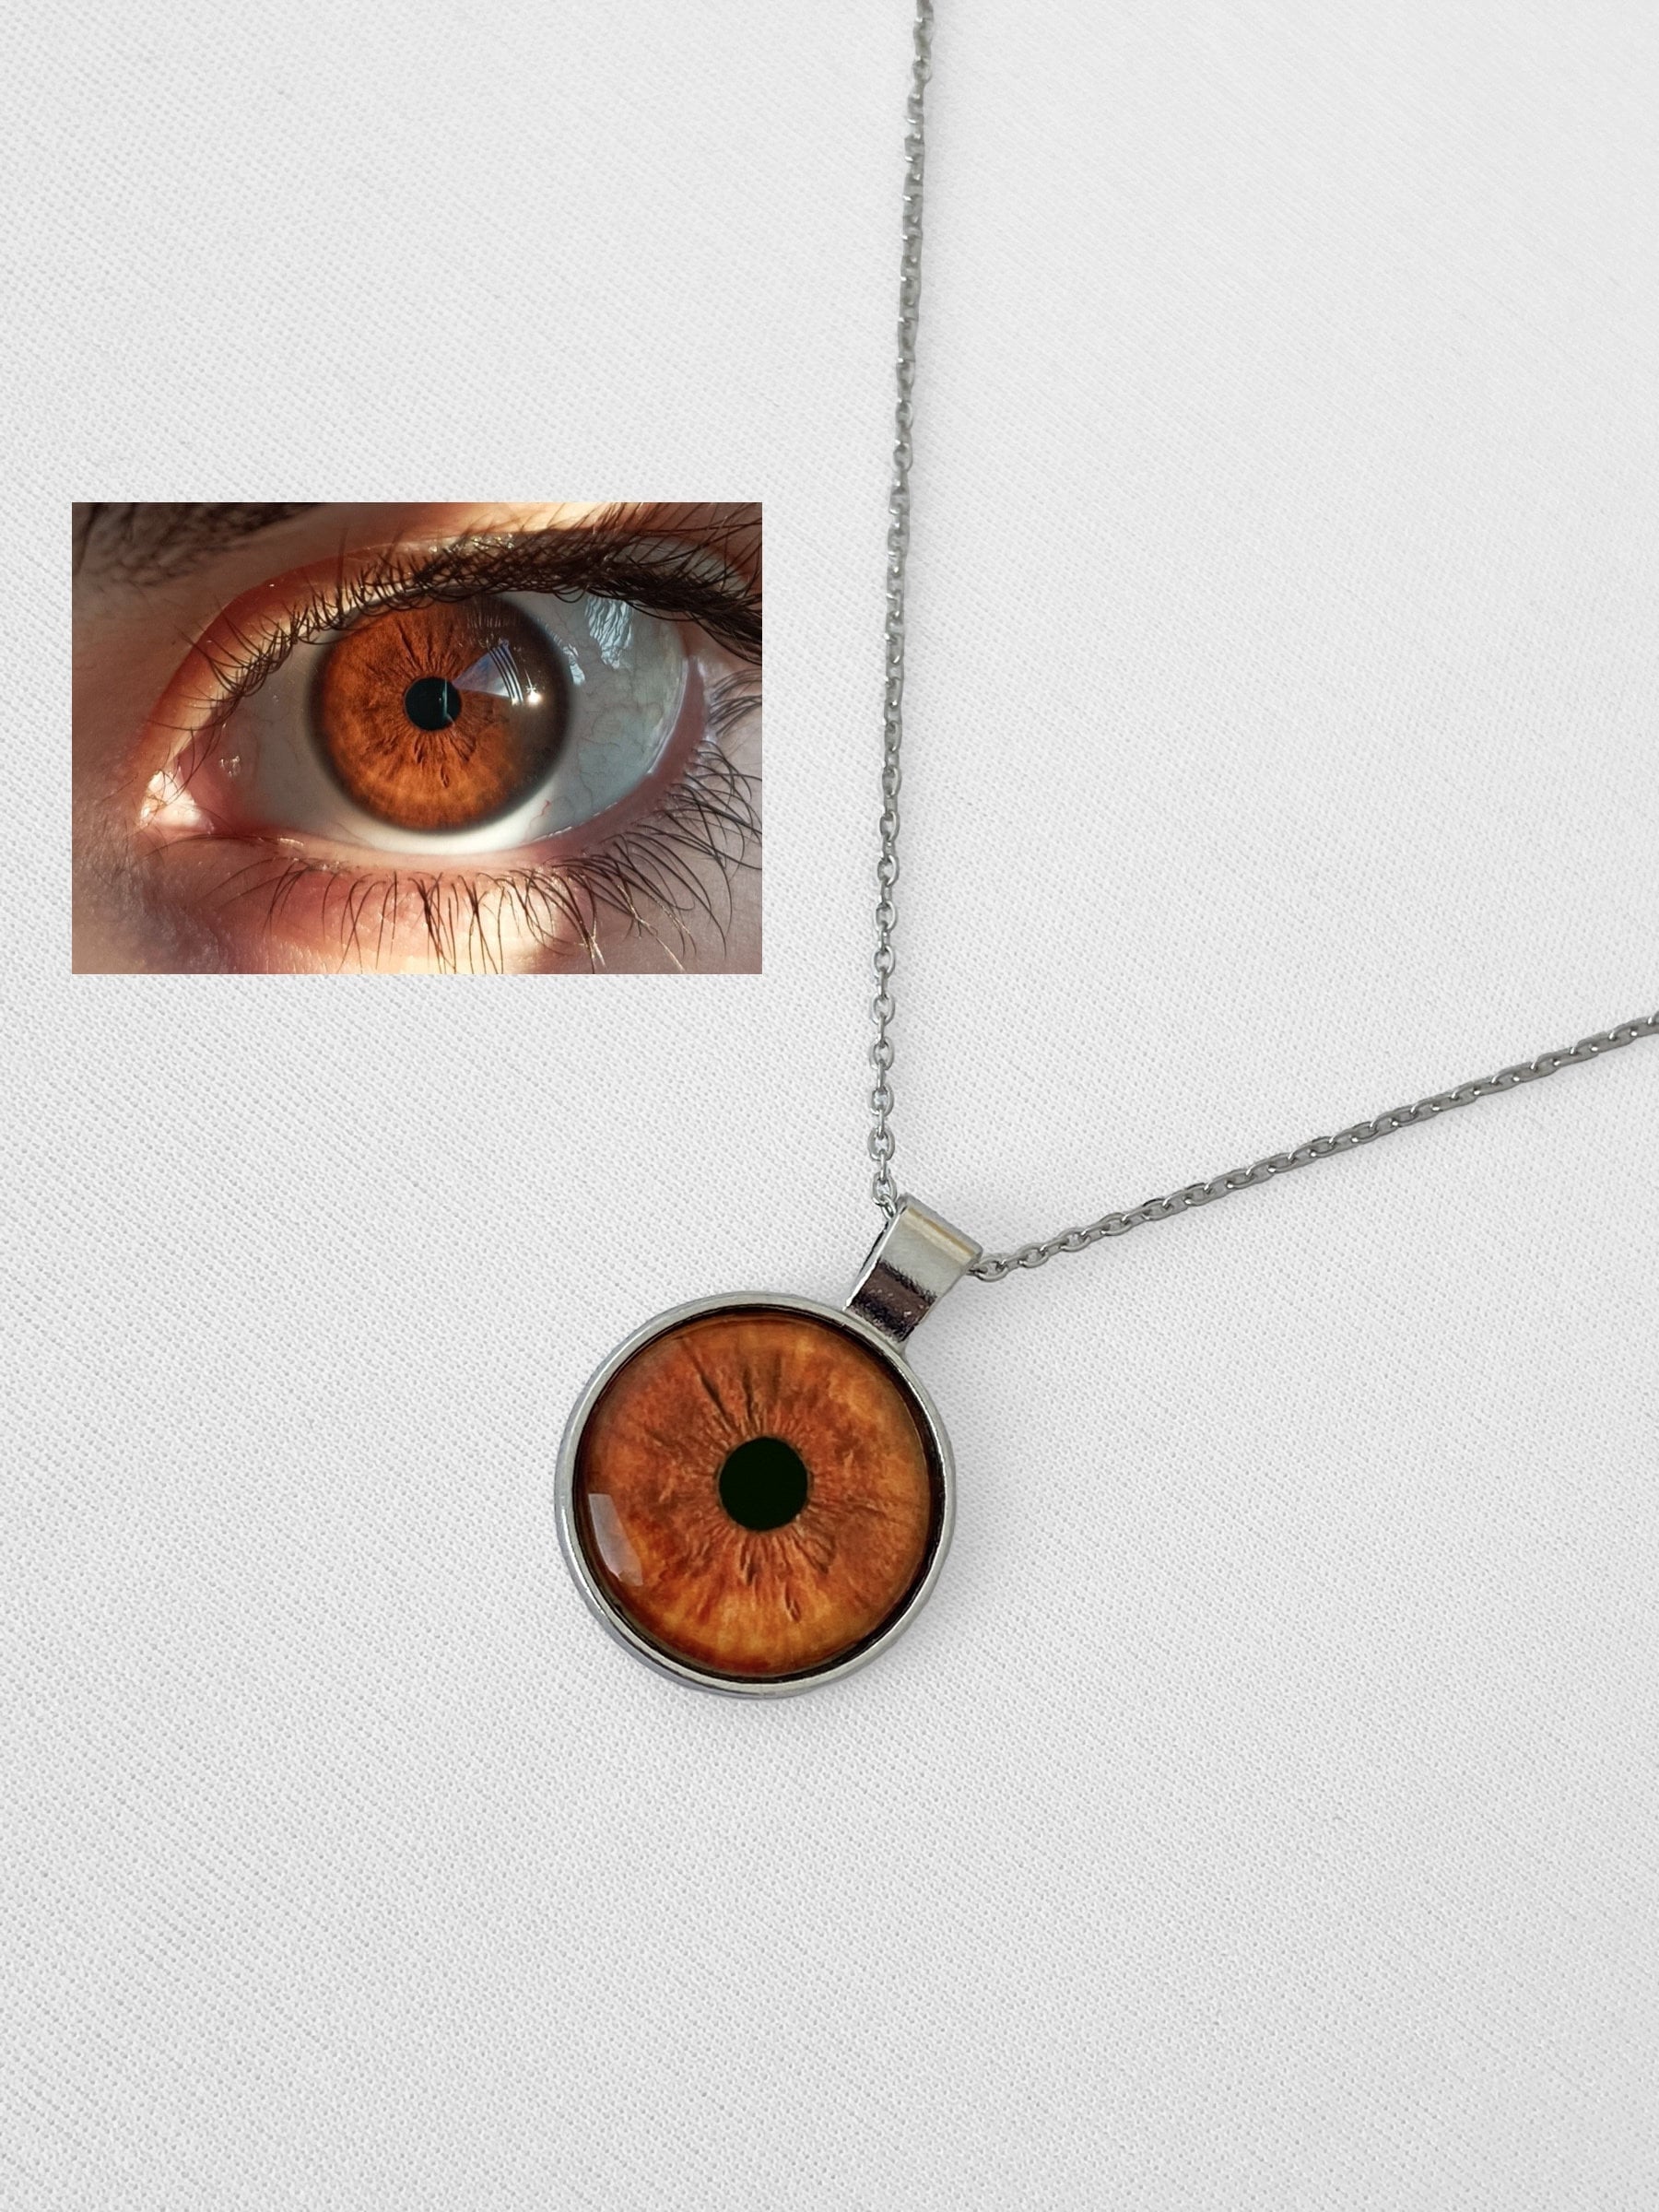 Eye Necklace Personalized Eye Iris Necklace